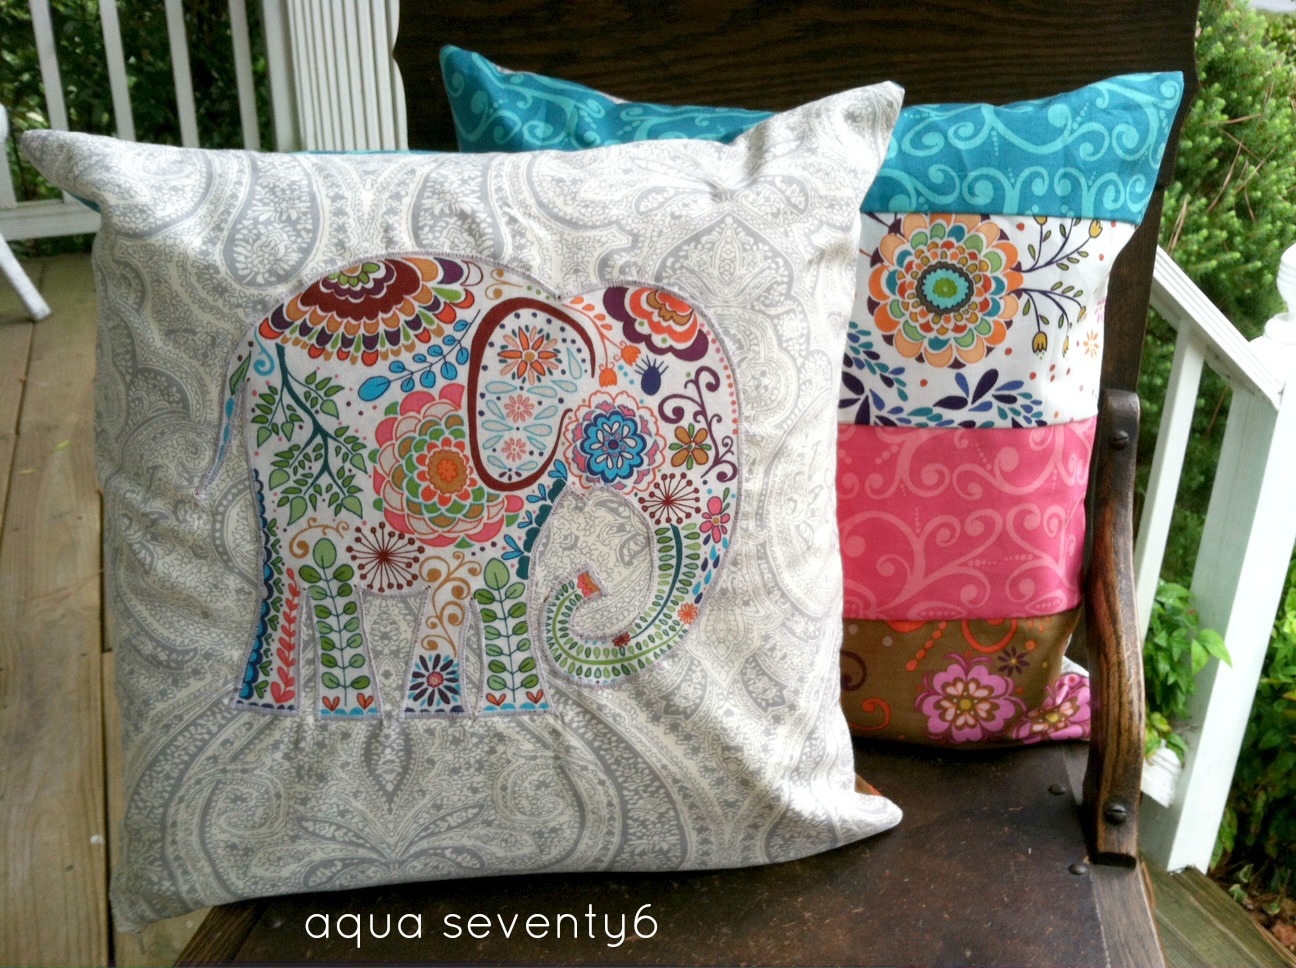 Aqua Seventy6: Elephant Applique and Patchwork Throw Pillows